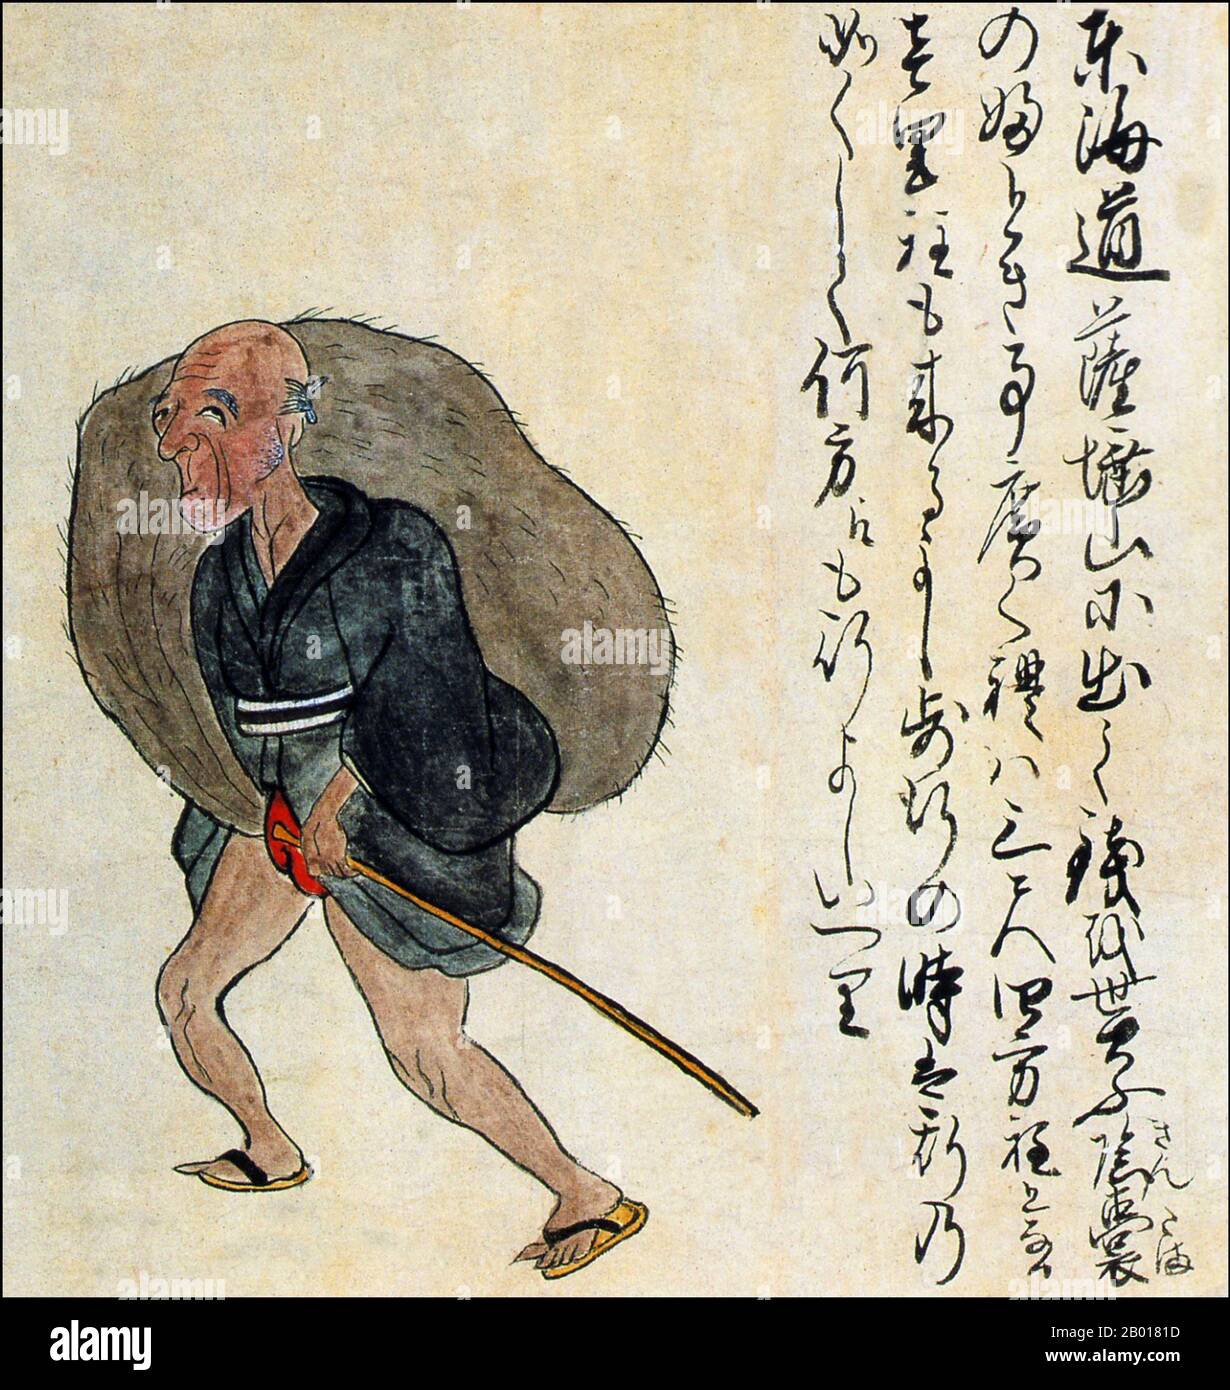 Japon : un homme aux testicules gonflés.Du Kaikidan Ekotoba Monster Scroll, au milieu du 19th siècle.Il y a longtemps, un homme aux testicules massifs aurait vécu comme une attraction secondaire au mont Satta, sur l'ancienne route Tokaido près de la ville de Shizuoka.Son scrotum aurait mesuré environ un mètre à travers.Le Kaikidan Ekotoba est un handscroll du milieu du 19th siècle qui présente 33 monstres légendaires et odyties humaines, principalement de la région de Kyushu au Japon, mais avec plusieurs d'autres pays, y compris la Chine, la Russie et la Corée. Banque D'Images